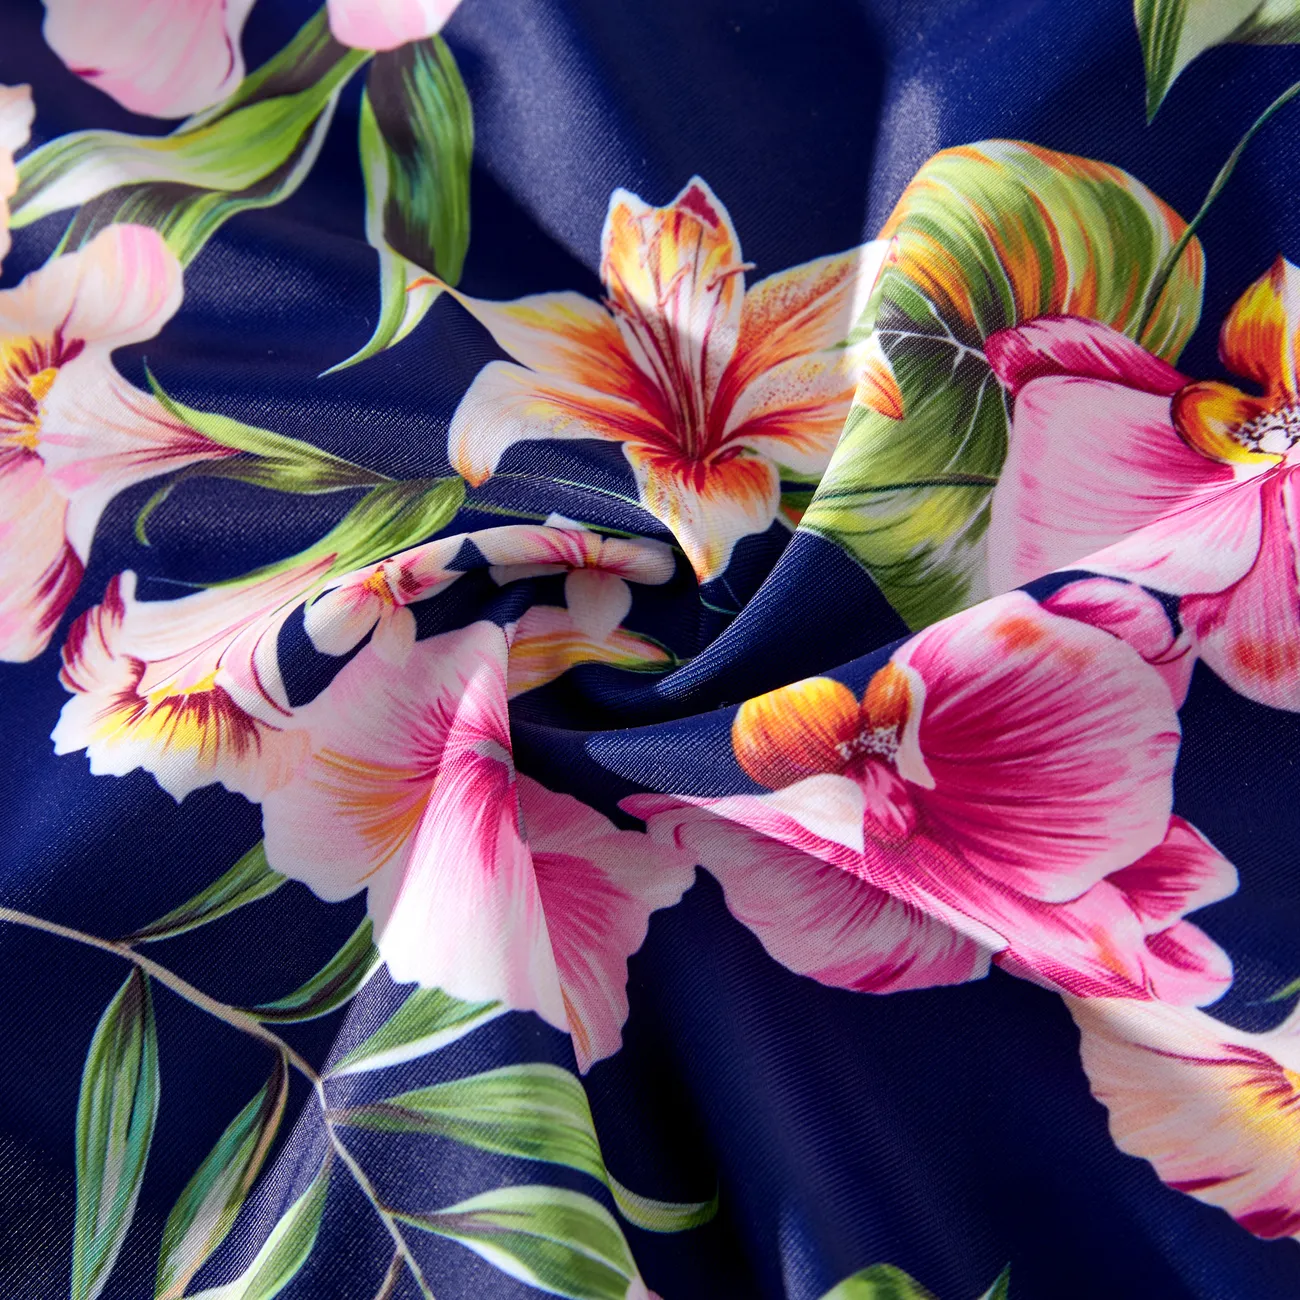 Look de família Plantas e flores tropicais Conjuntos de roupa para a família Fato de banho Azul big image 1